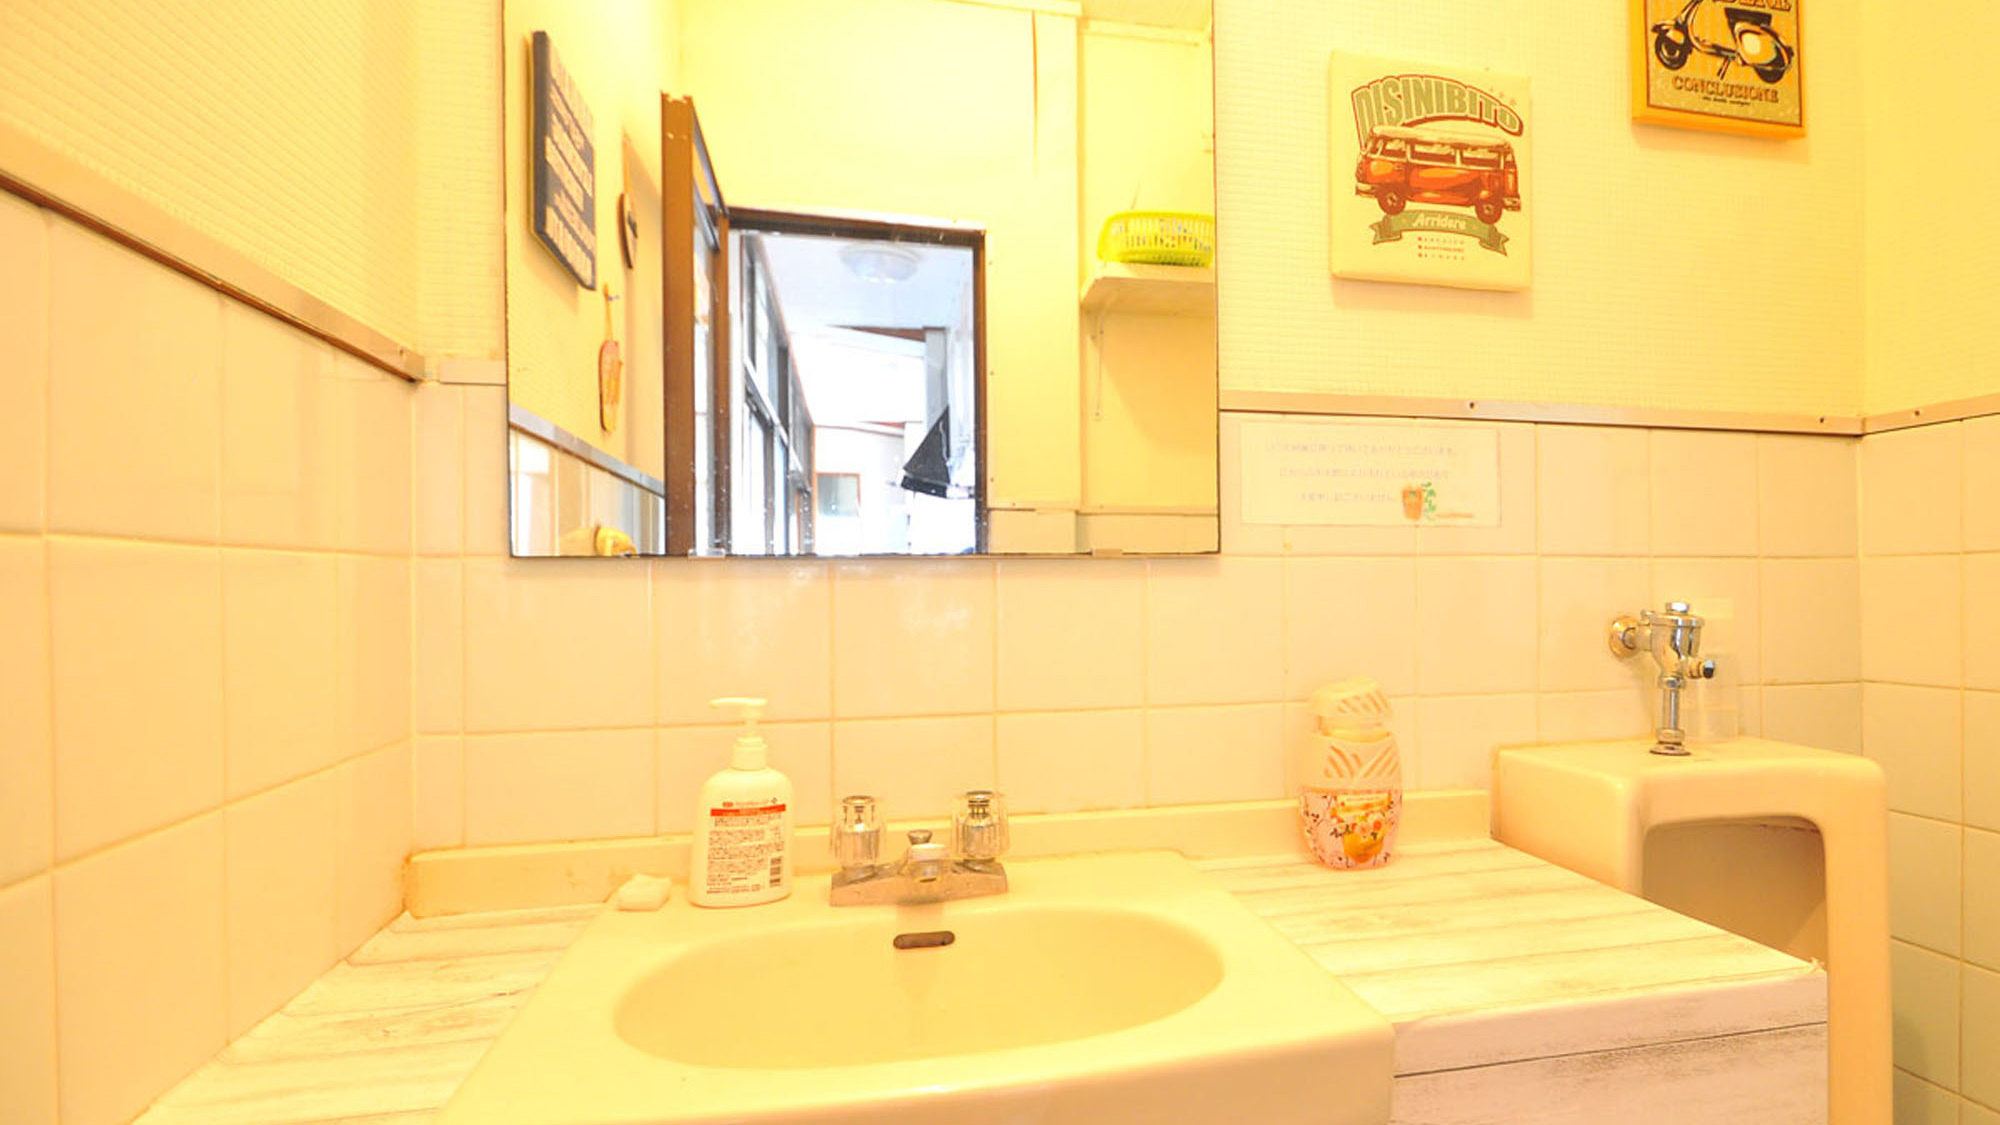 【2階洗面台&男性用(小)トイレ-(共同)】お出かけの準備に余裕のある広さの洗面台